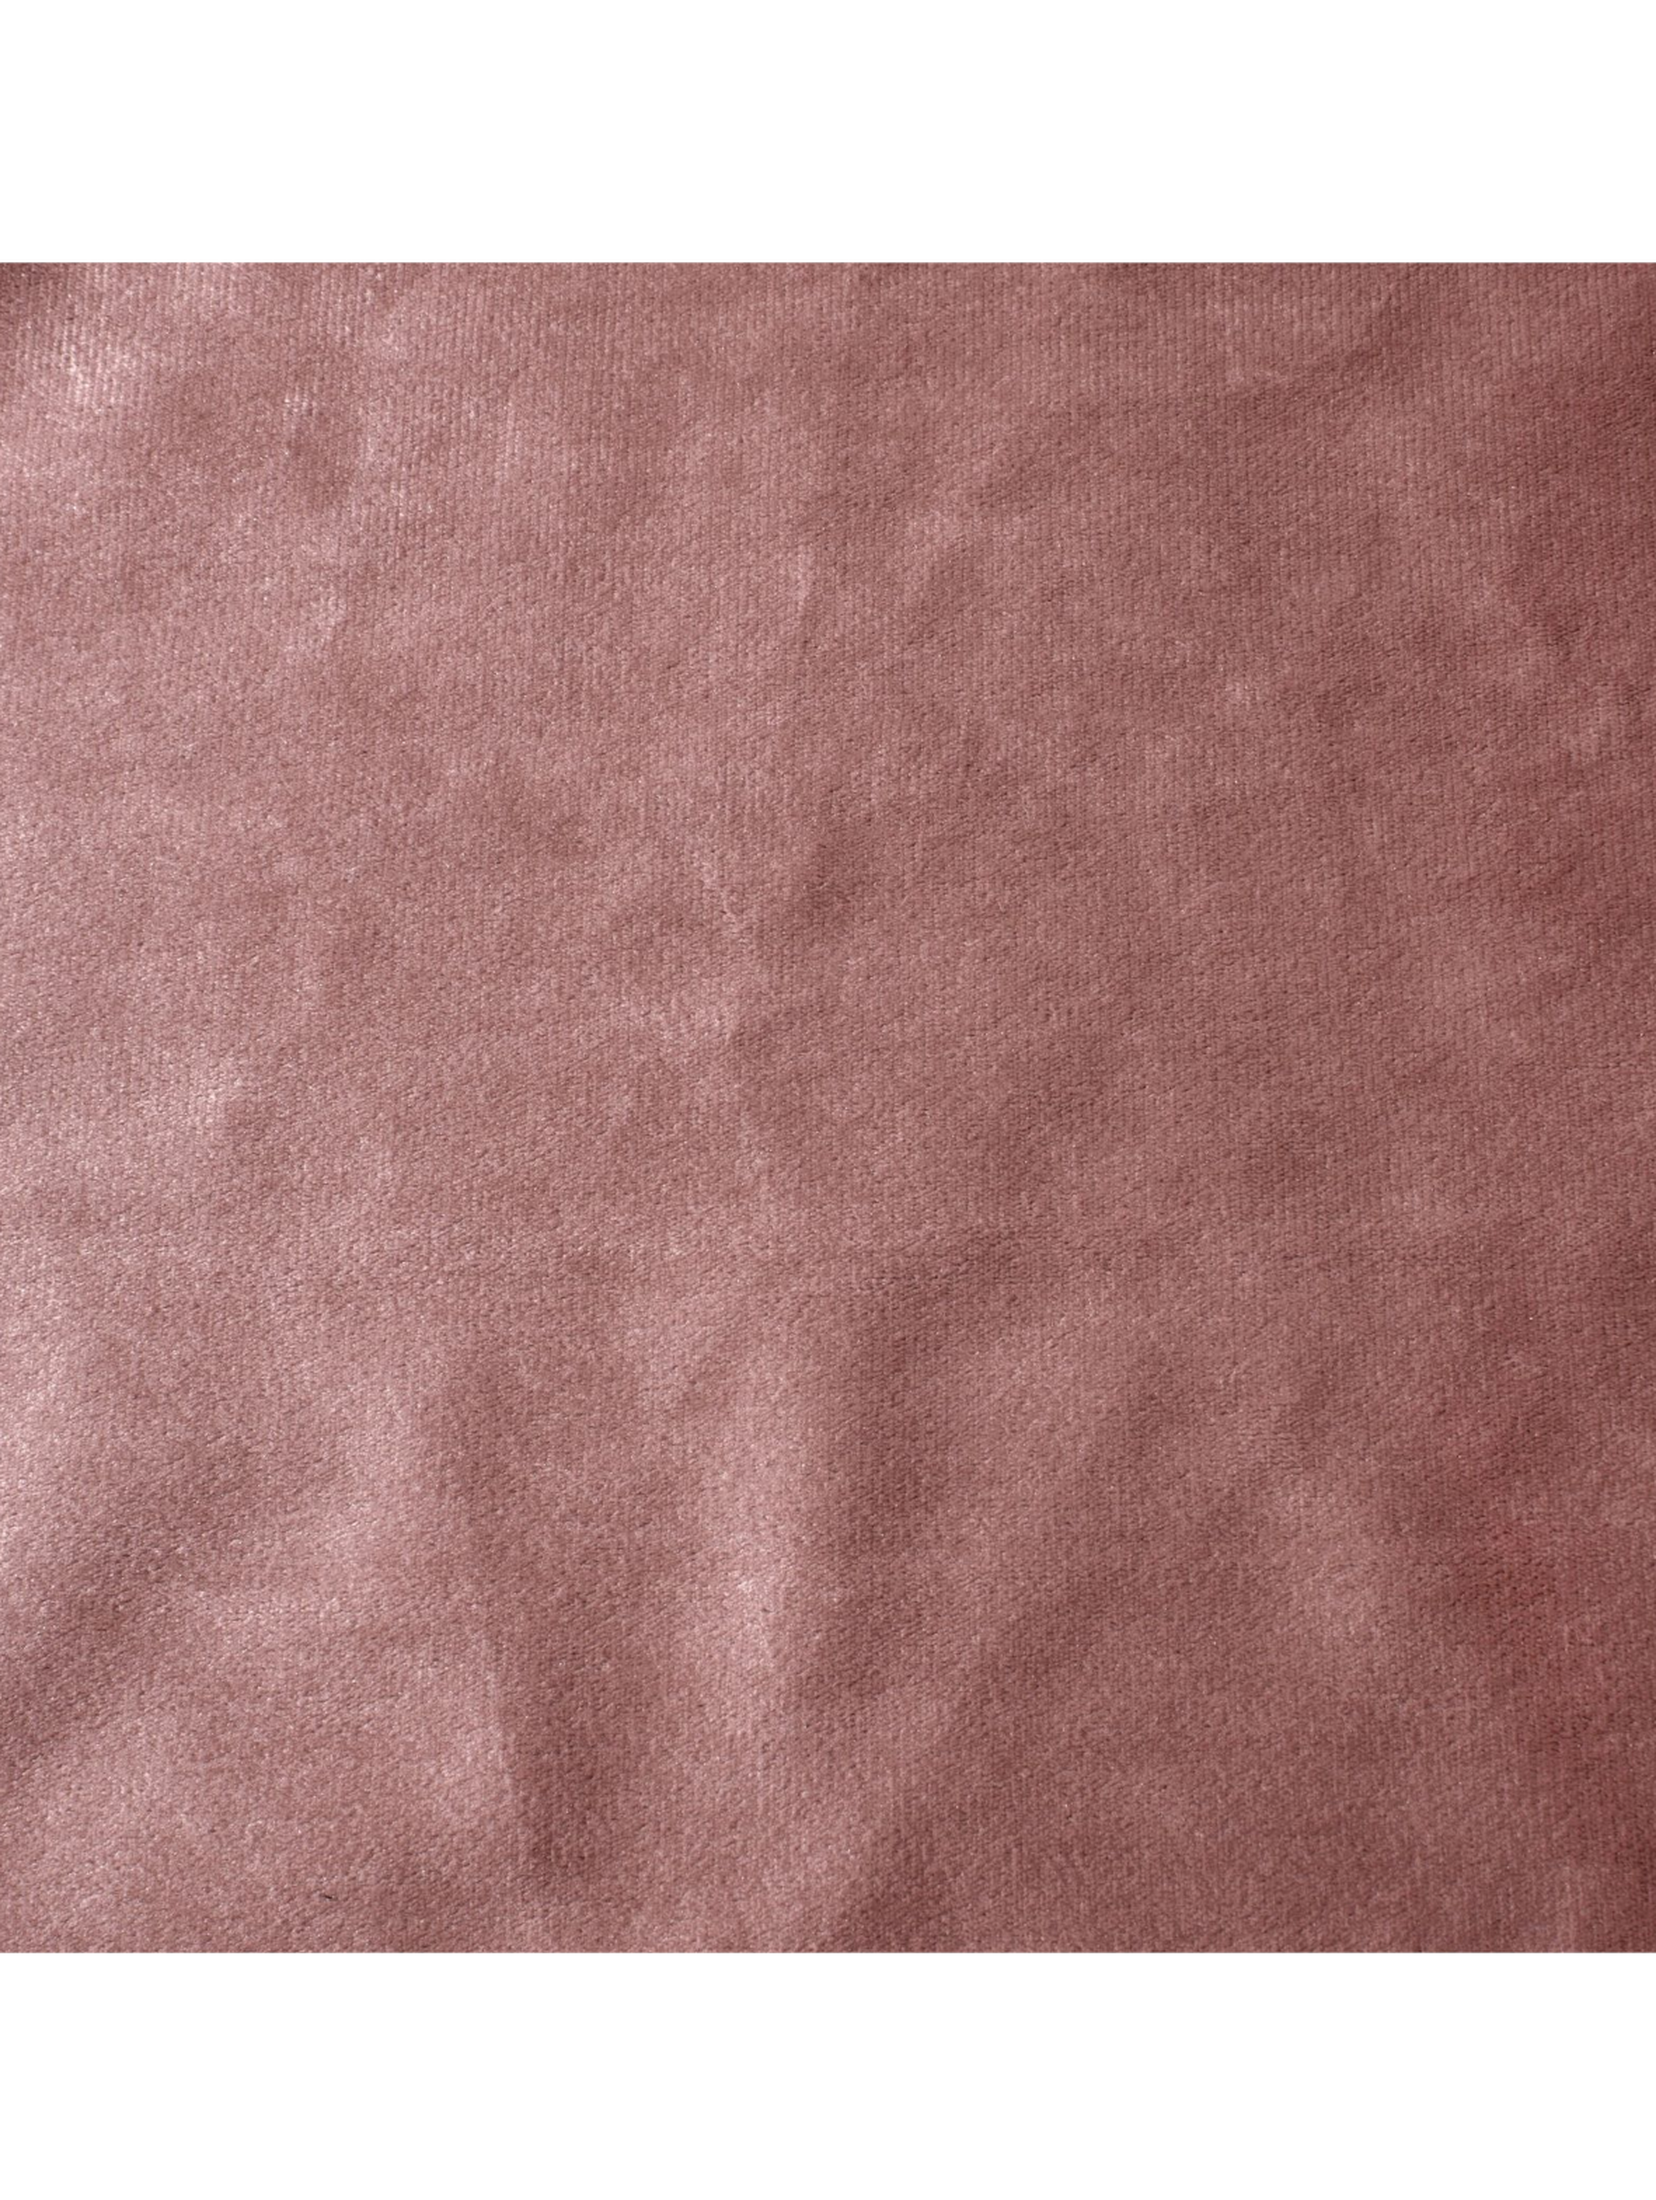 Różowa zasłona dekoracyjna 140x250 cm